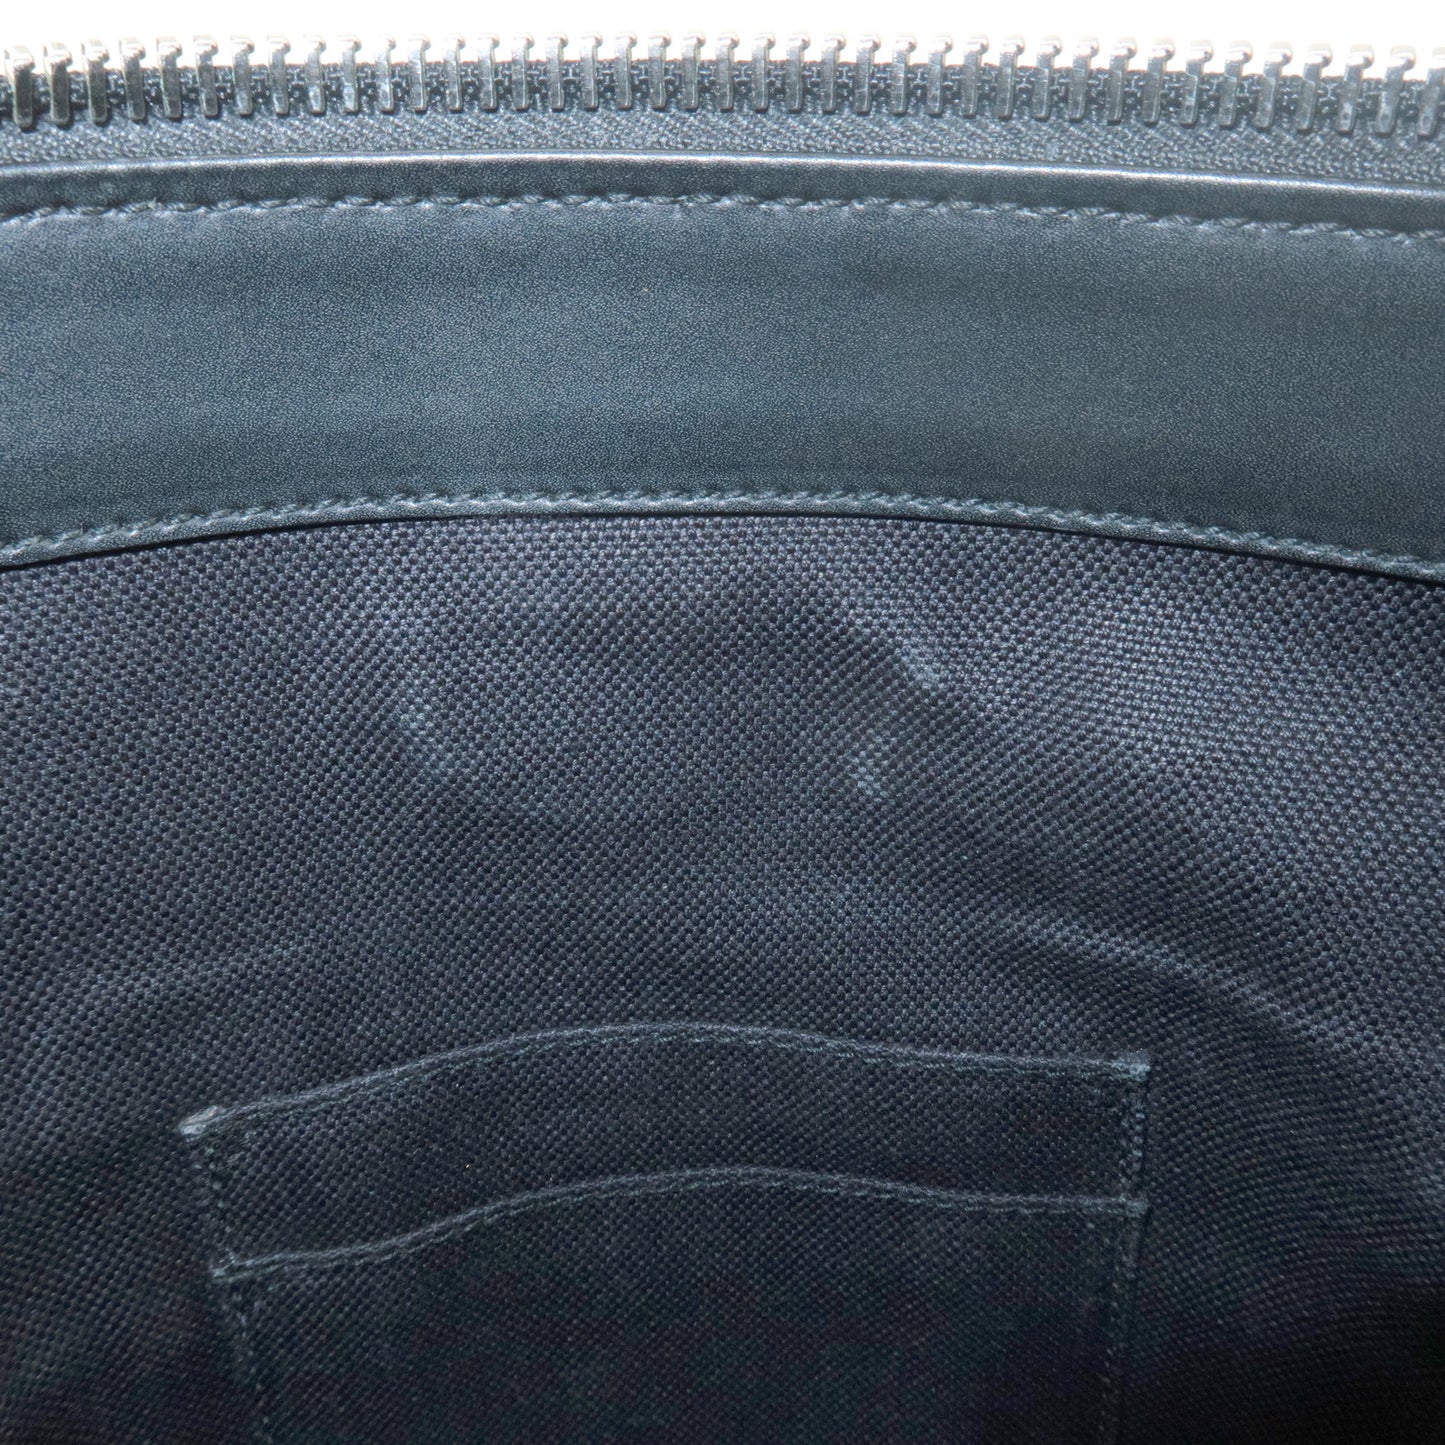 GUCCI Sherry GG Supreme Leather Shoulder Bag Black 474137